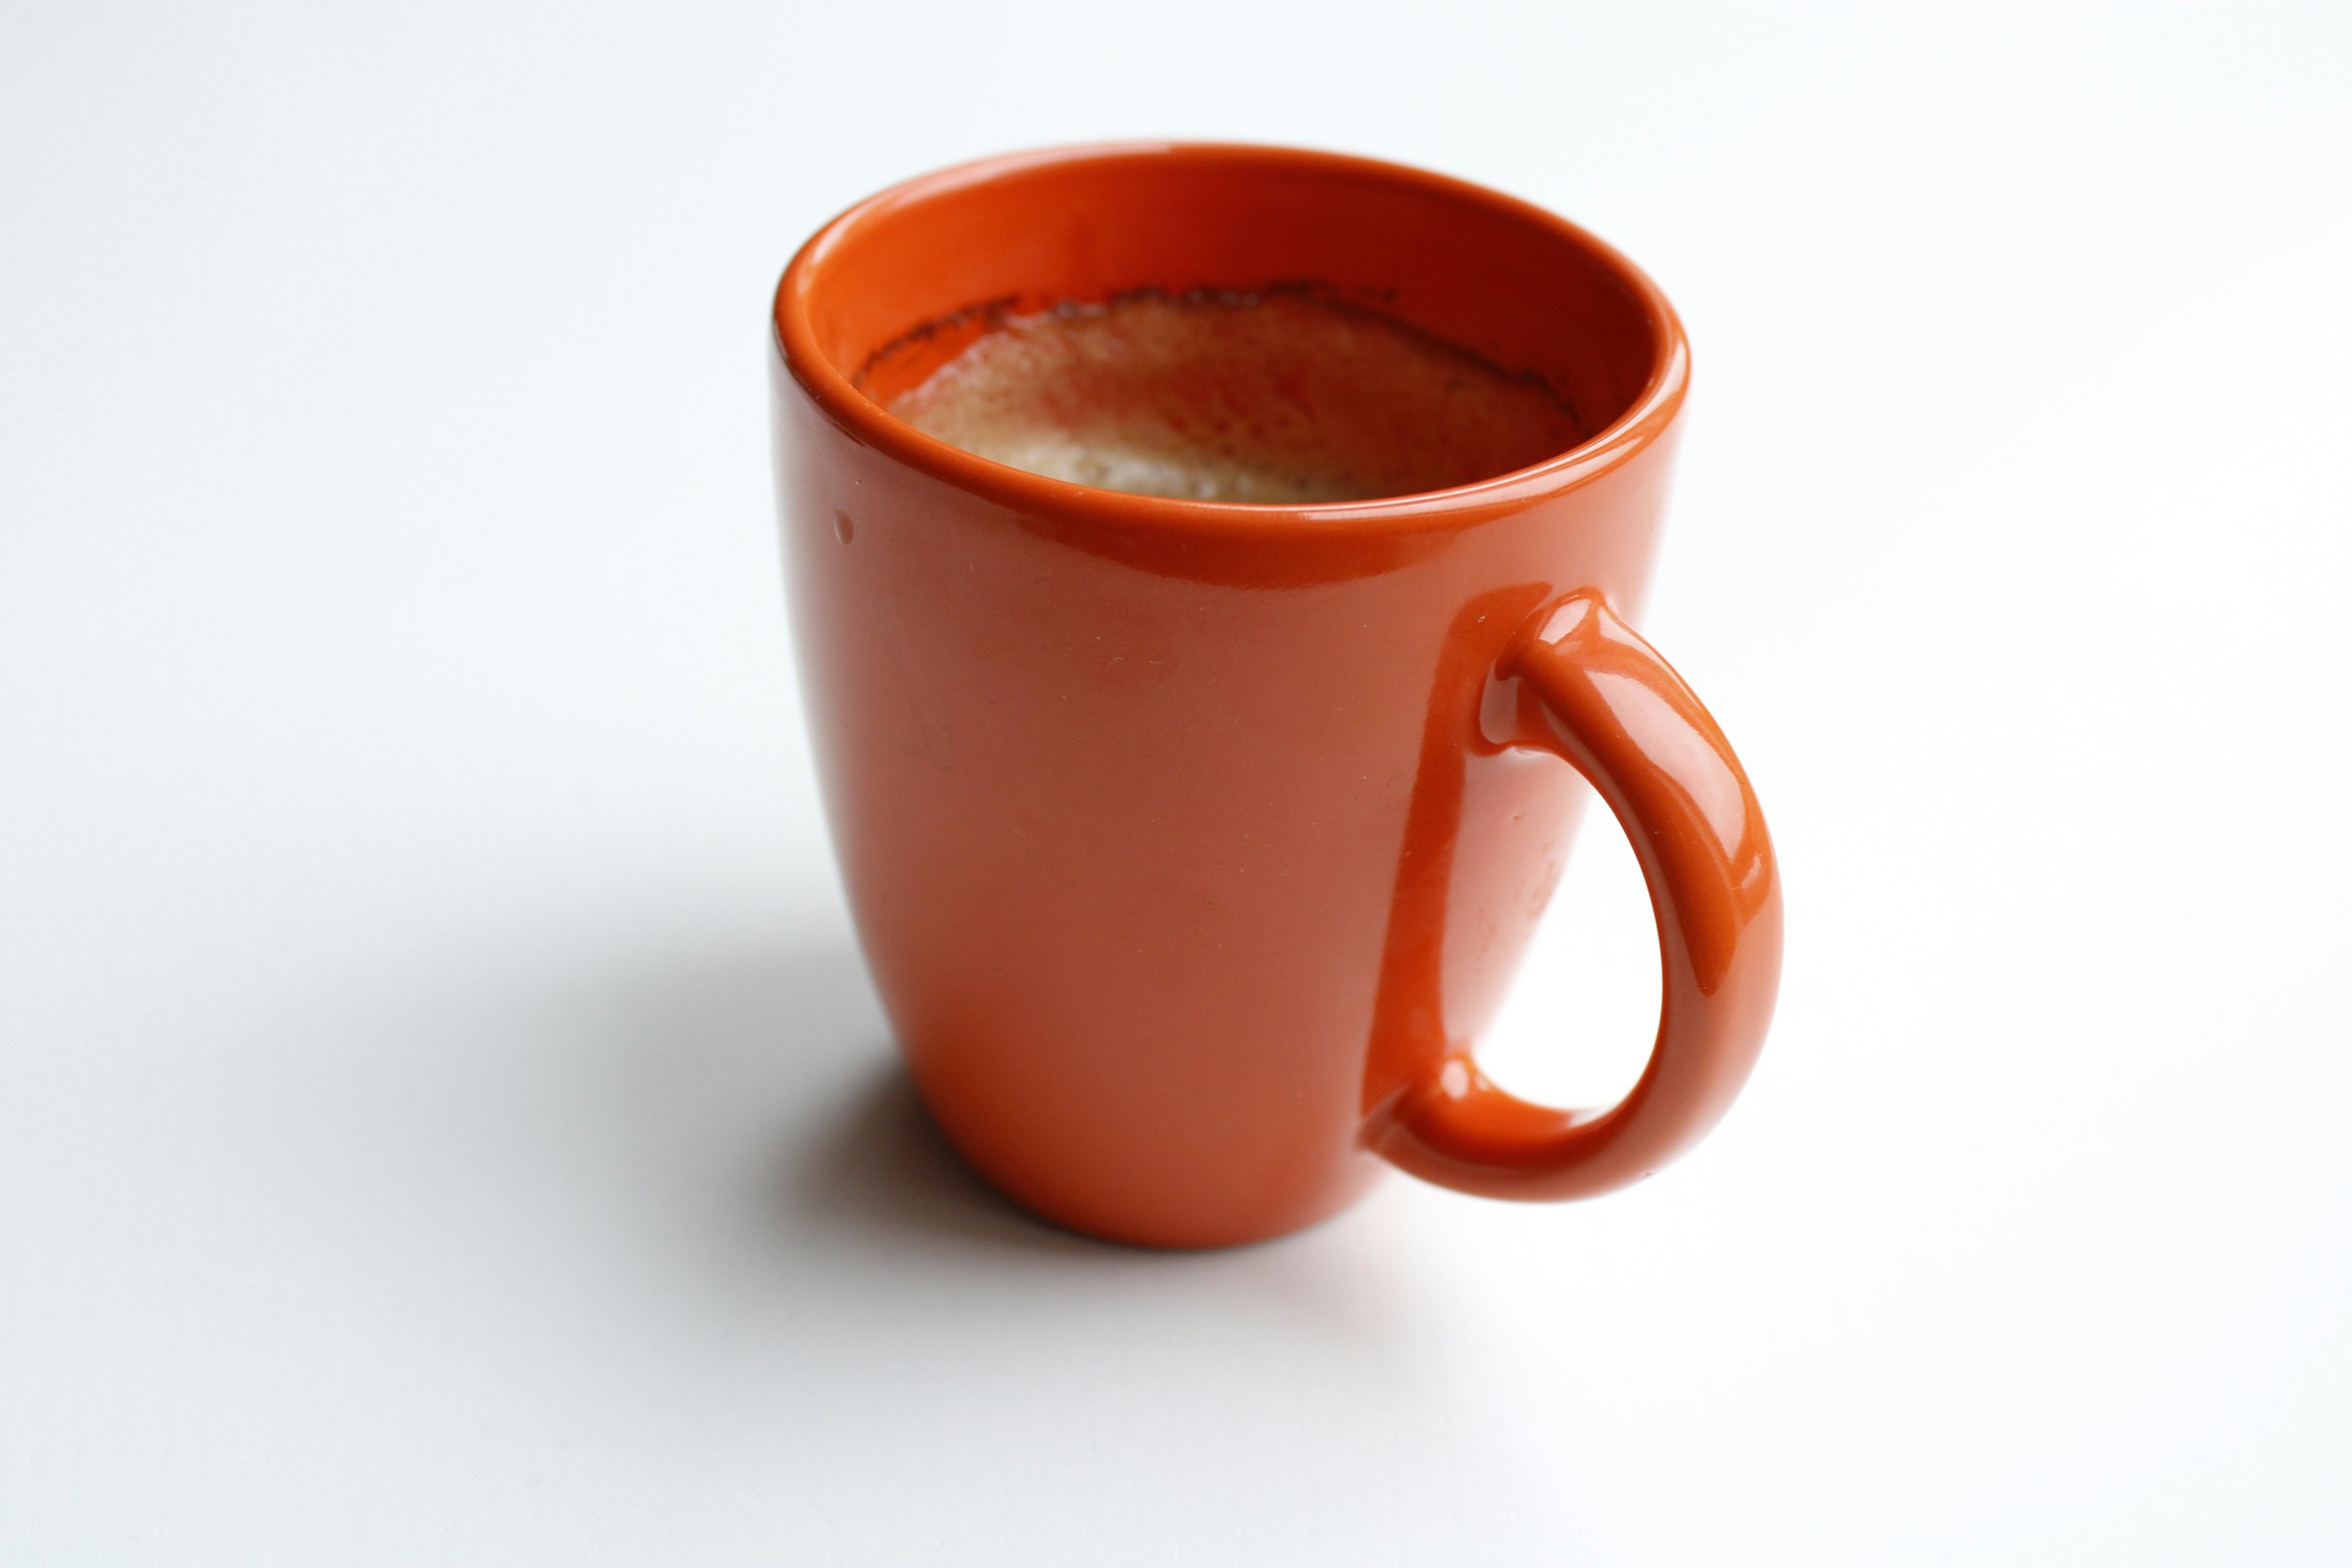 Une tasse de café | Source : Unsplash